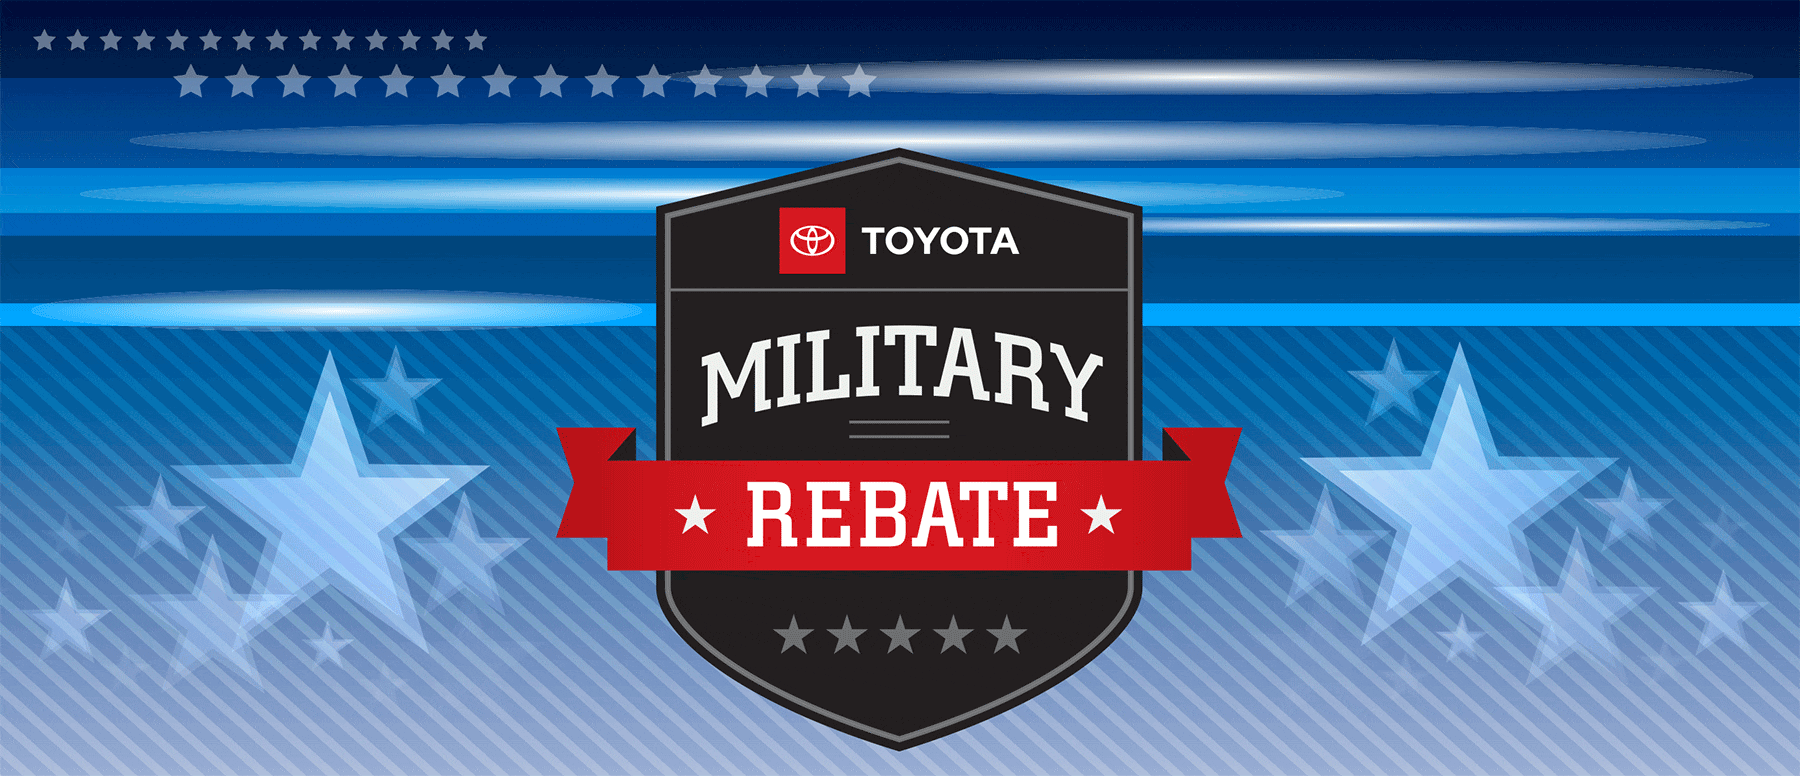 Military rebate